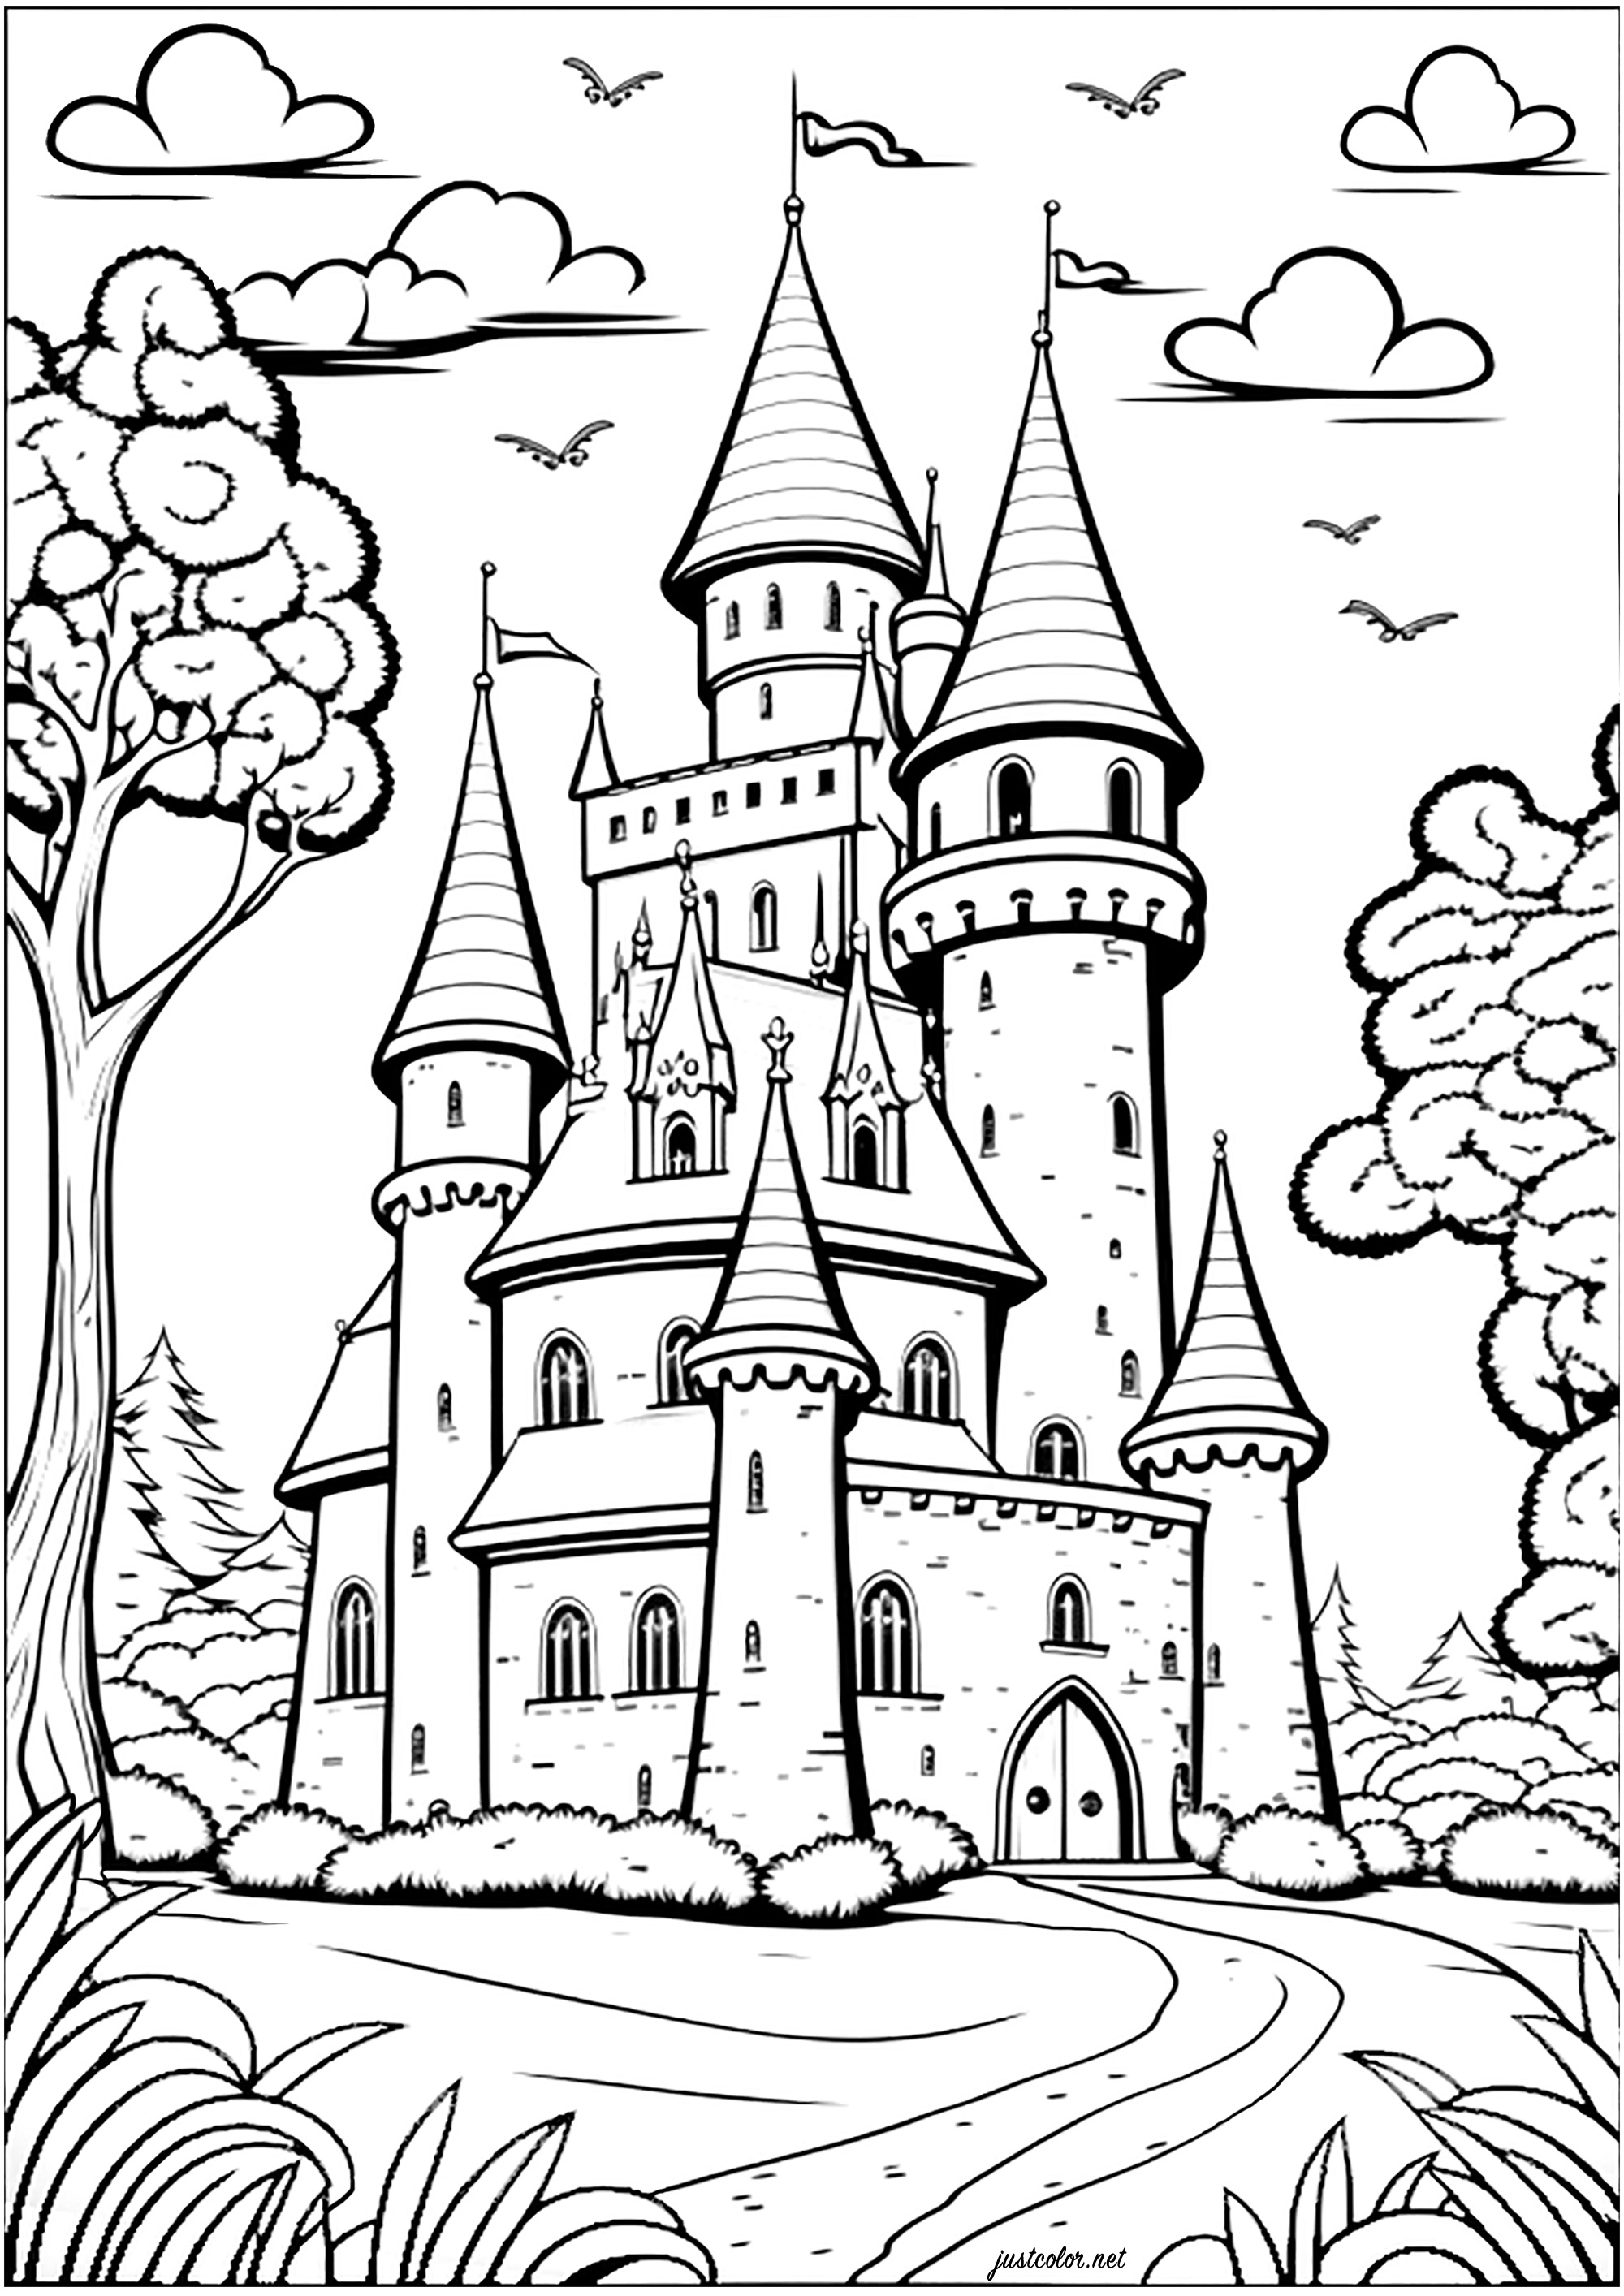 Colorear un castillo en un reino imaginario. Colorea todas sus torretas, ventanas, puertas y paredes para vivir un momento encantado.